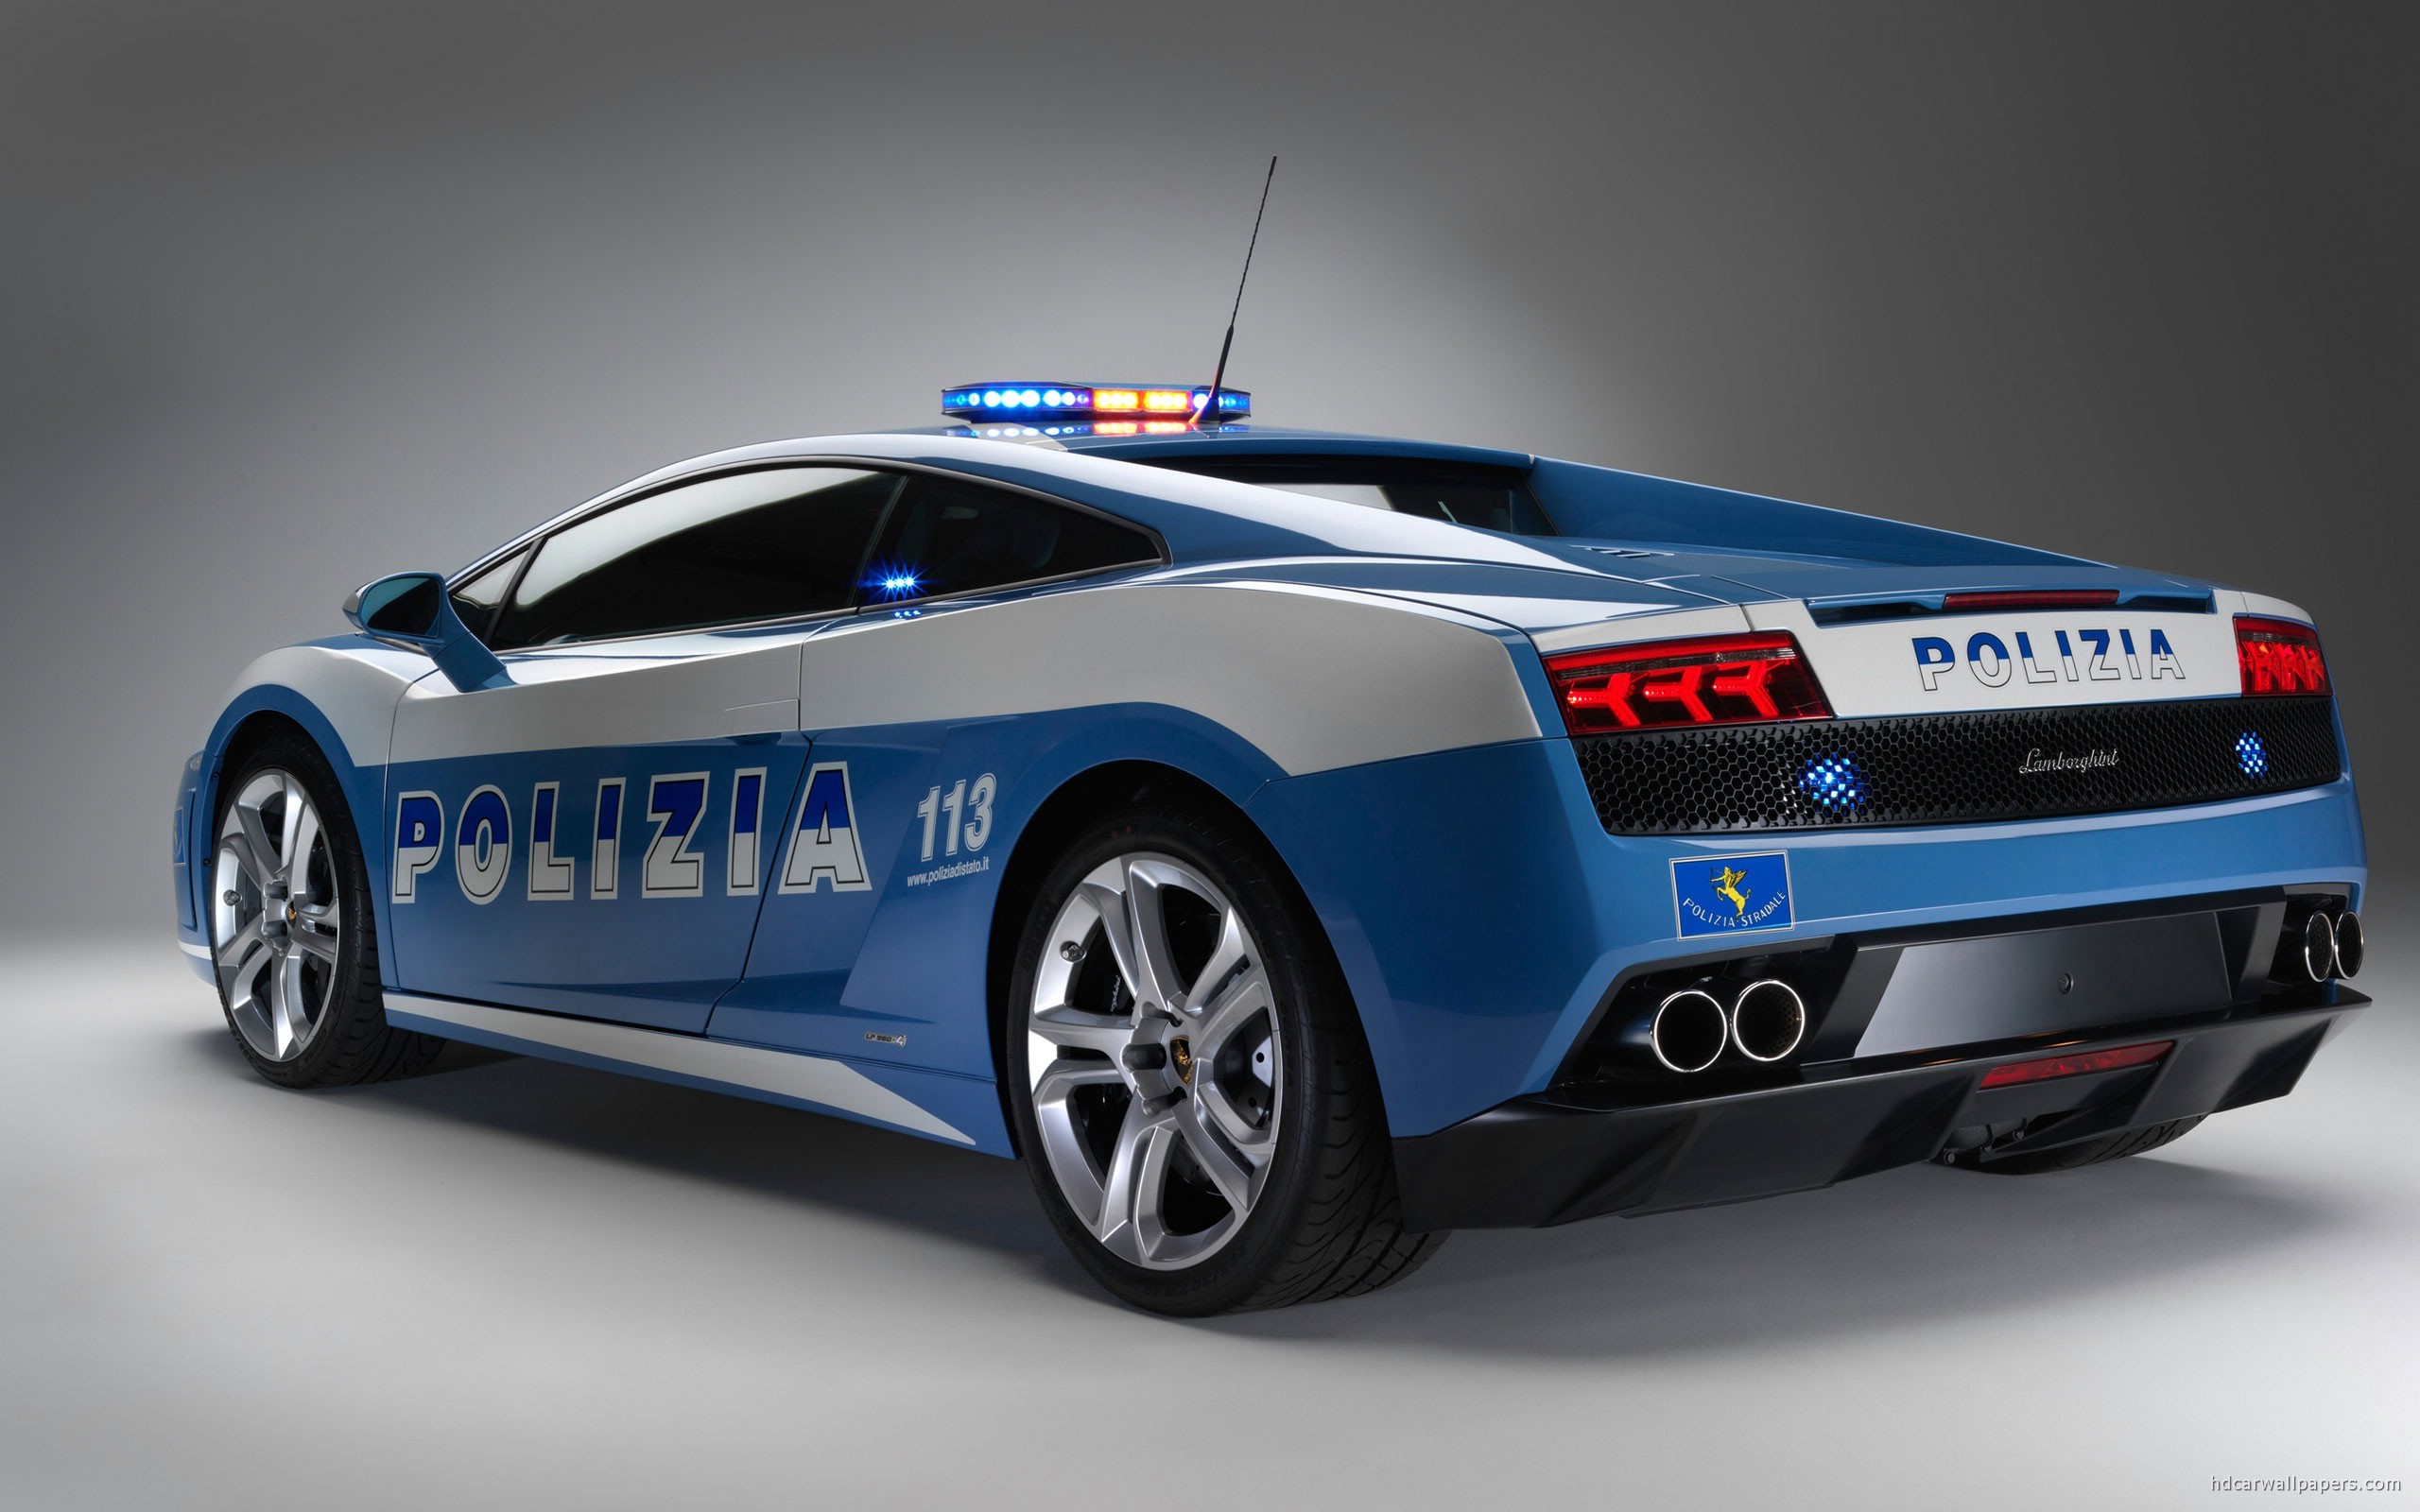 2560x1600 Lamborghini Gallardo Police Car Wallpaper | HD Car Wallpapers